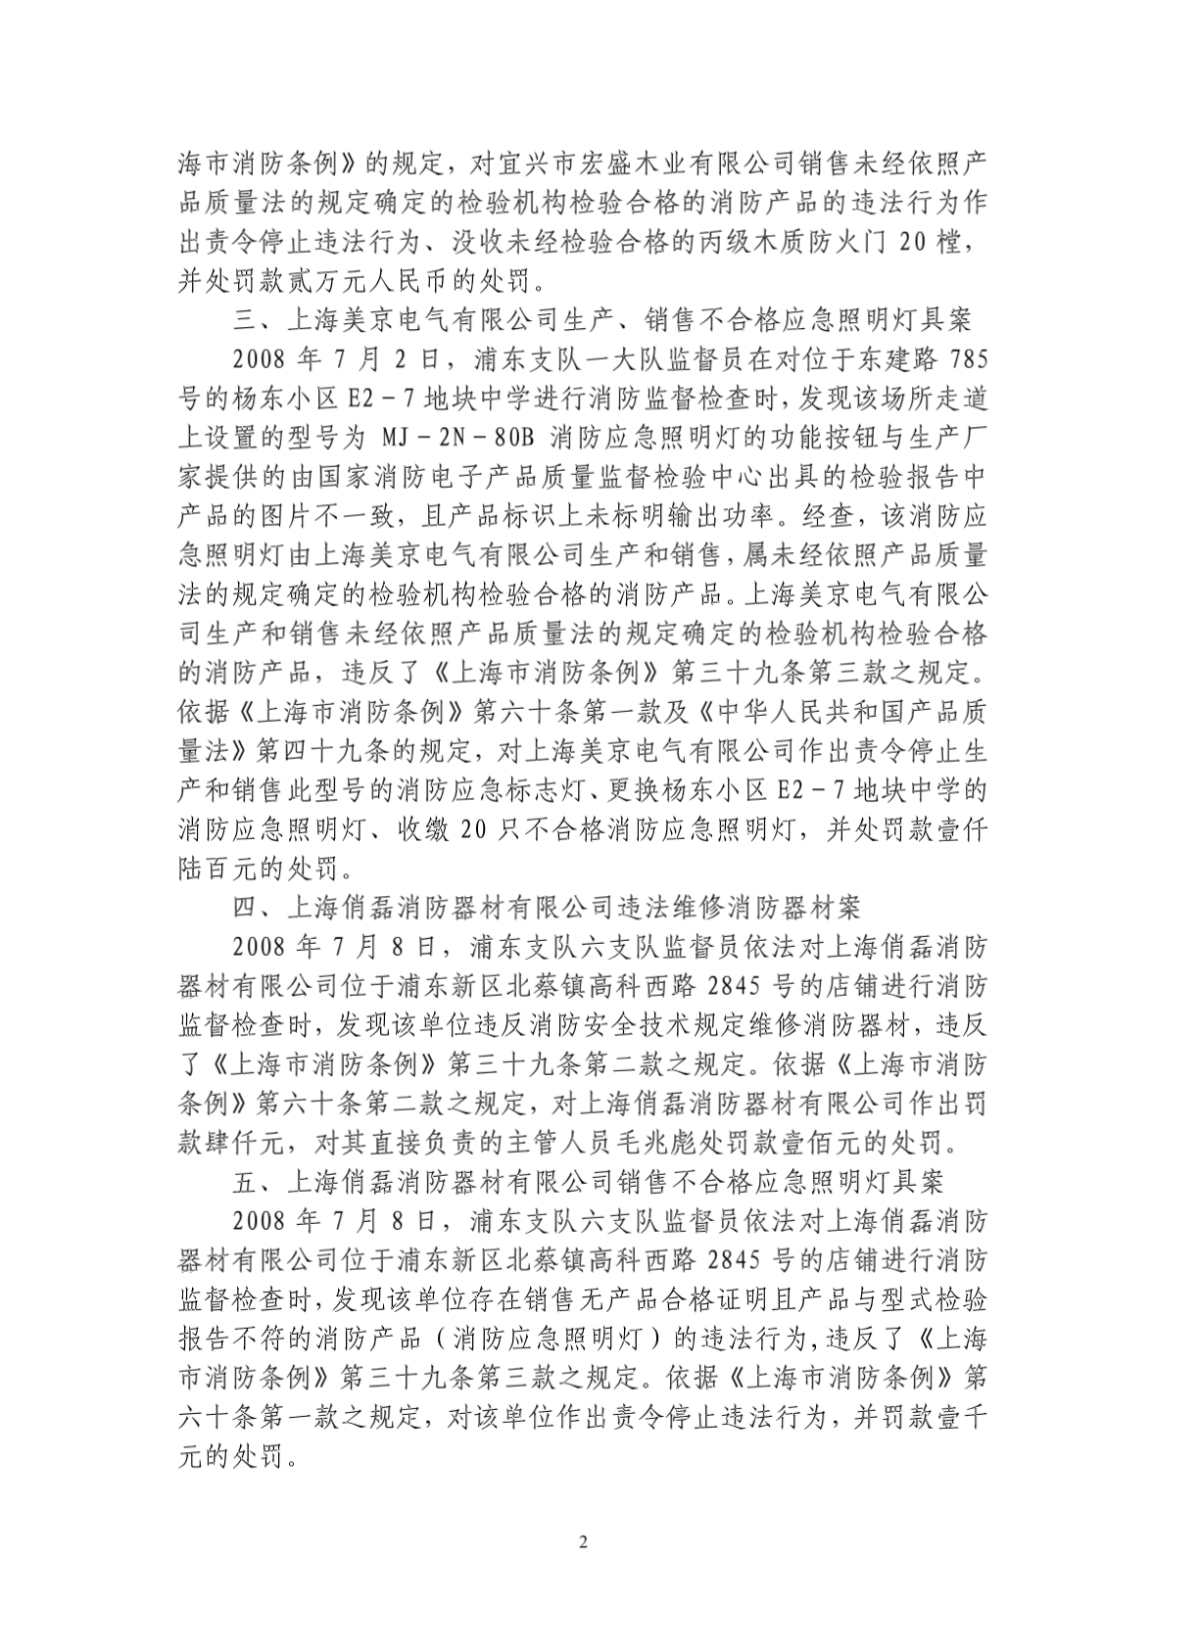 上海市2008年度消防产品行政处罚案件情况汇总-图一